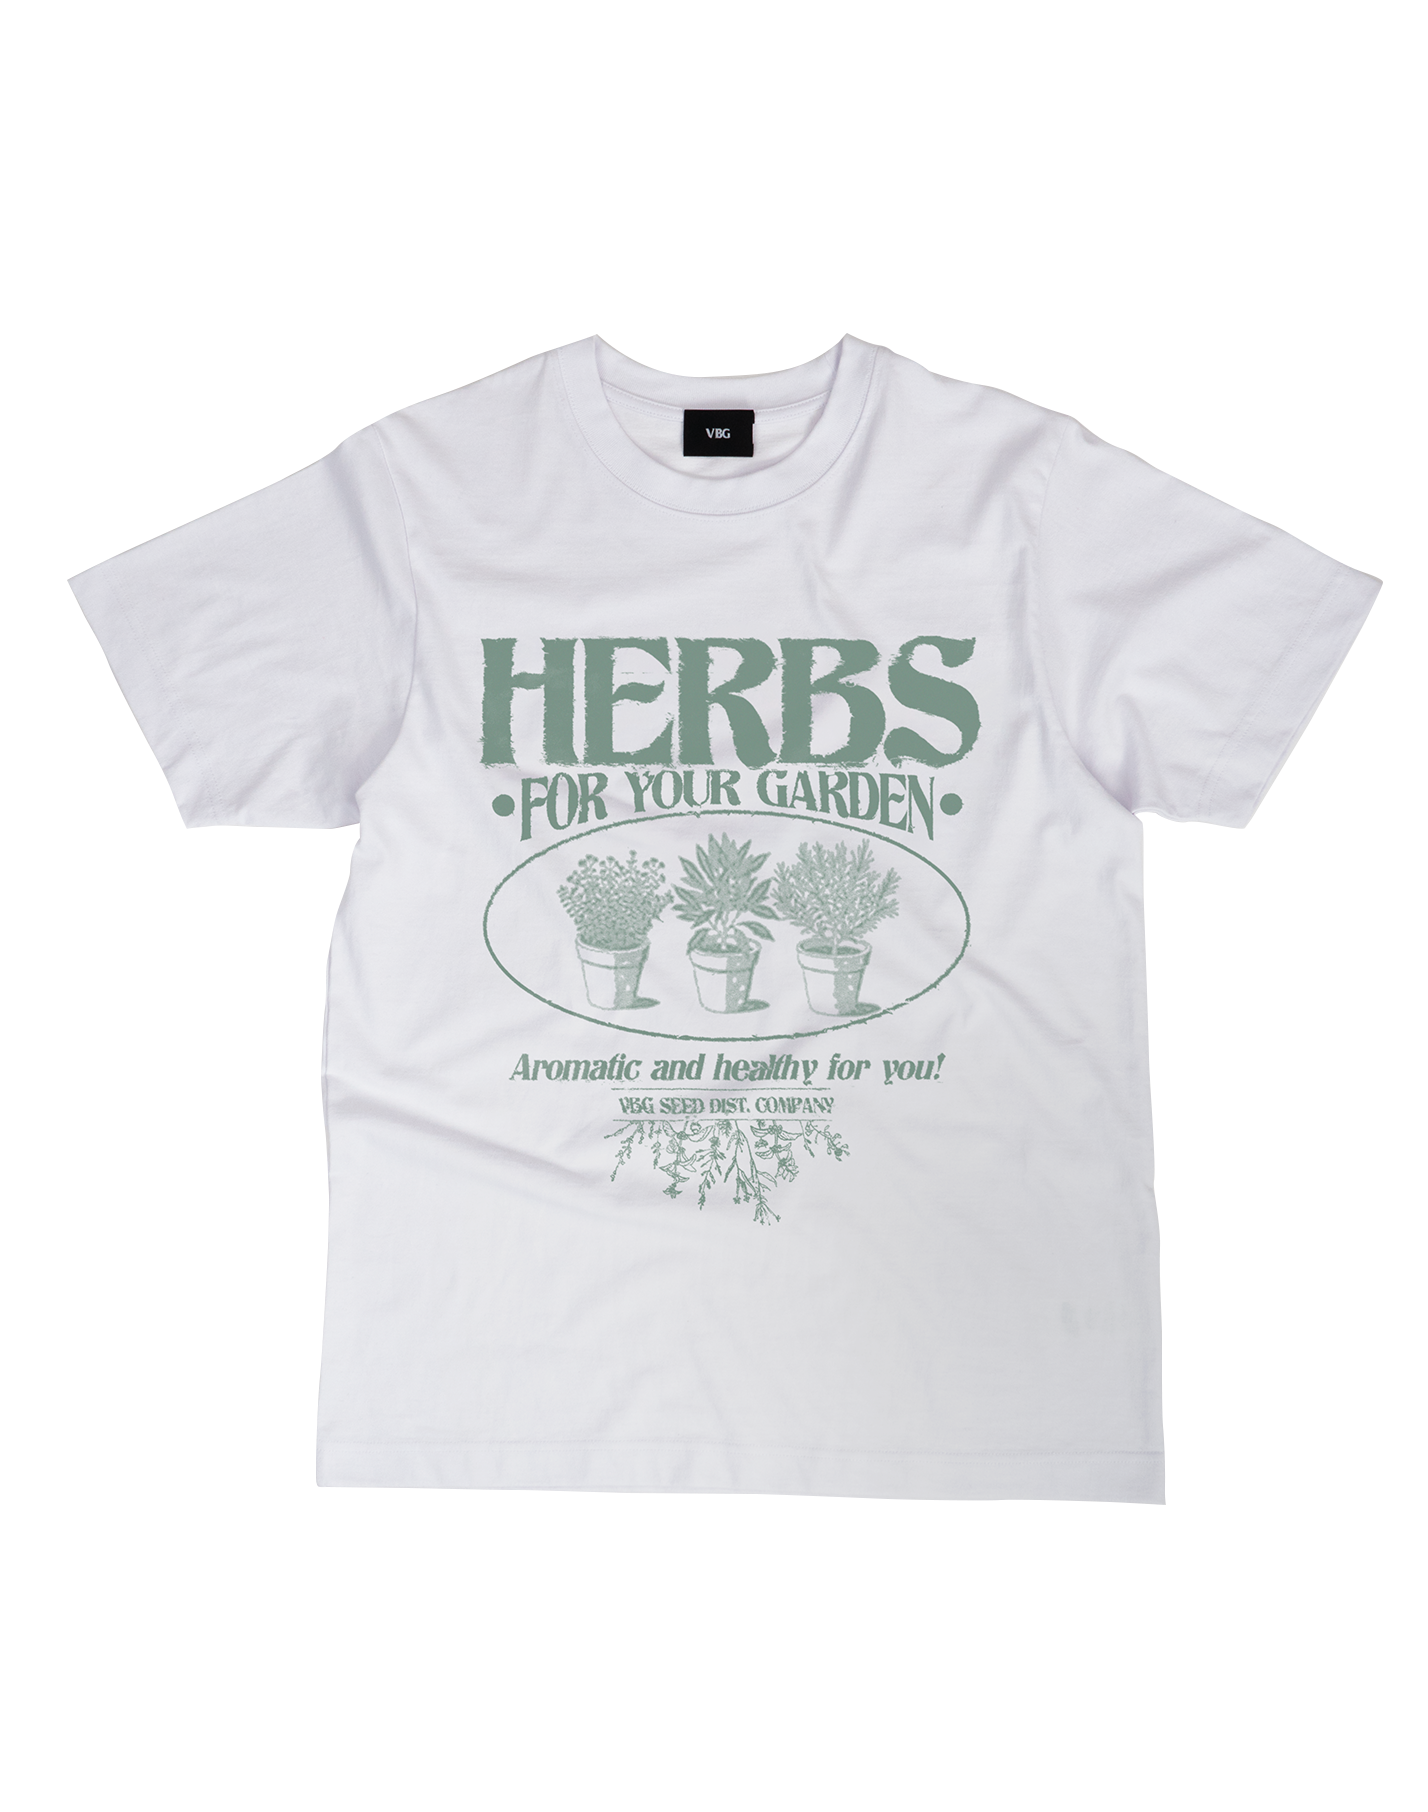 Herbs T-Shirt - VBG